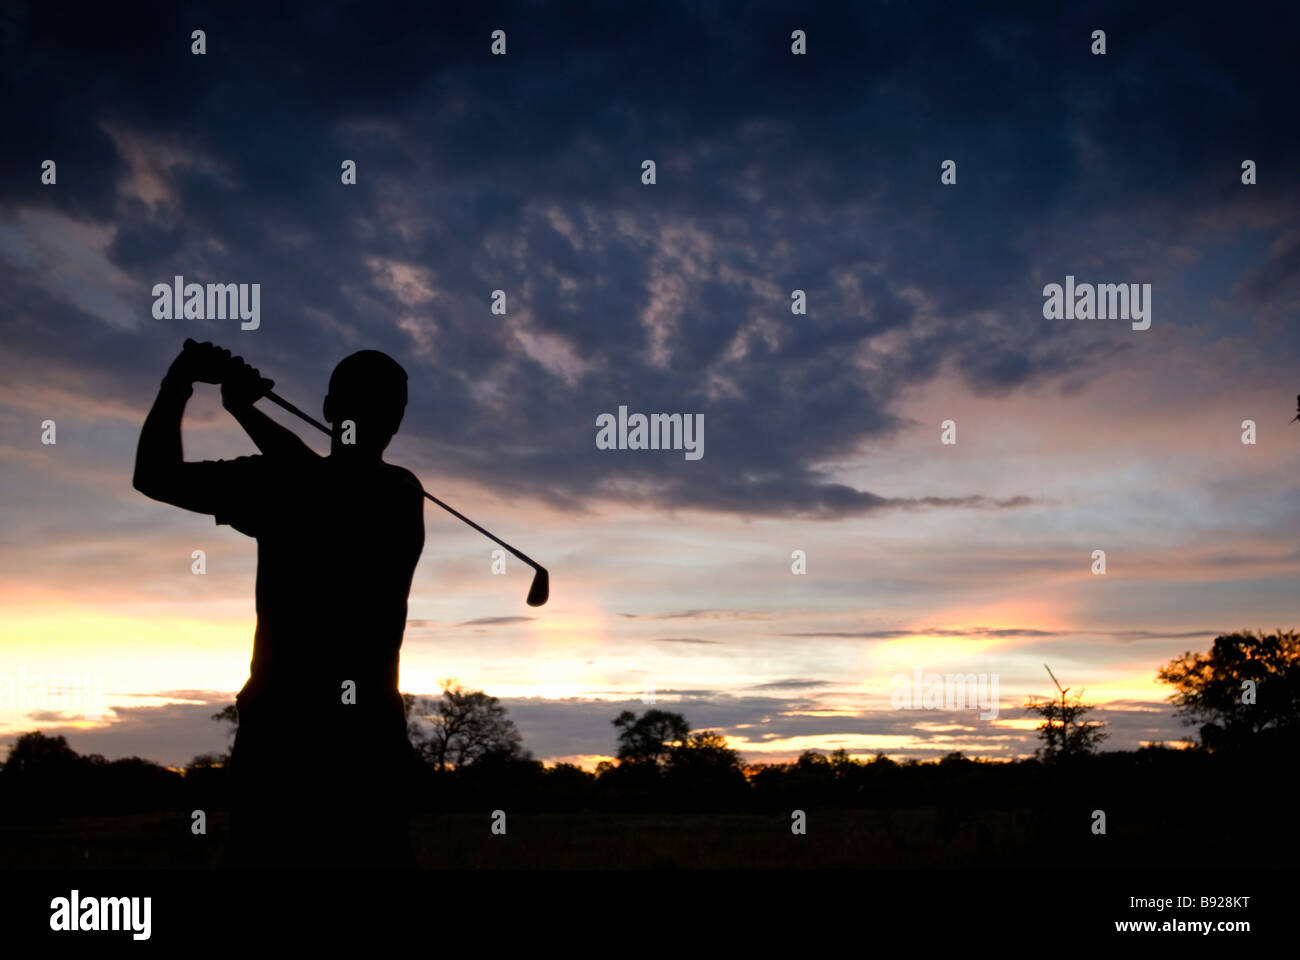 Silhouette der Golfspieler am Ende seine Schaukel im Bushveld Einstellung Moremi Wildlife Reserve Botswana Stockfoto